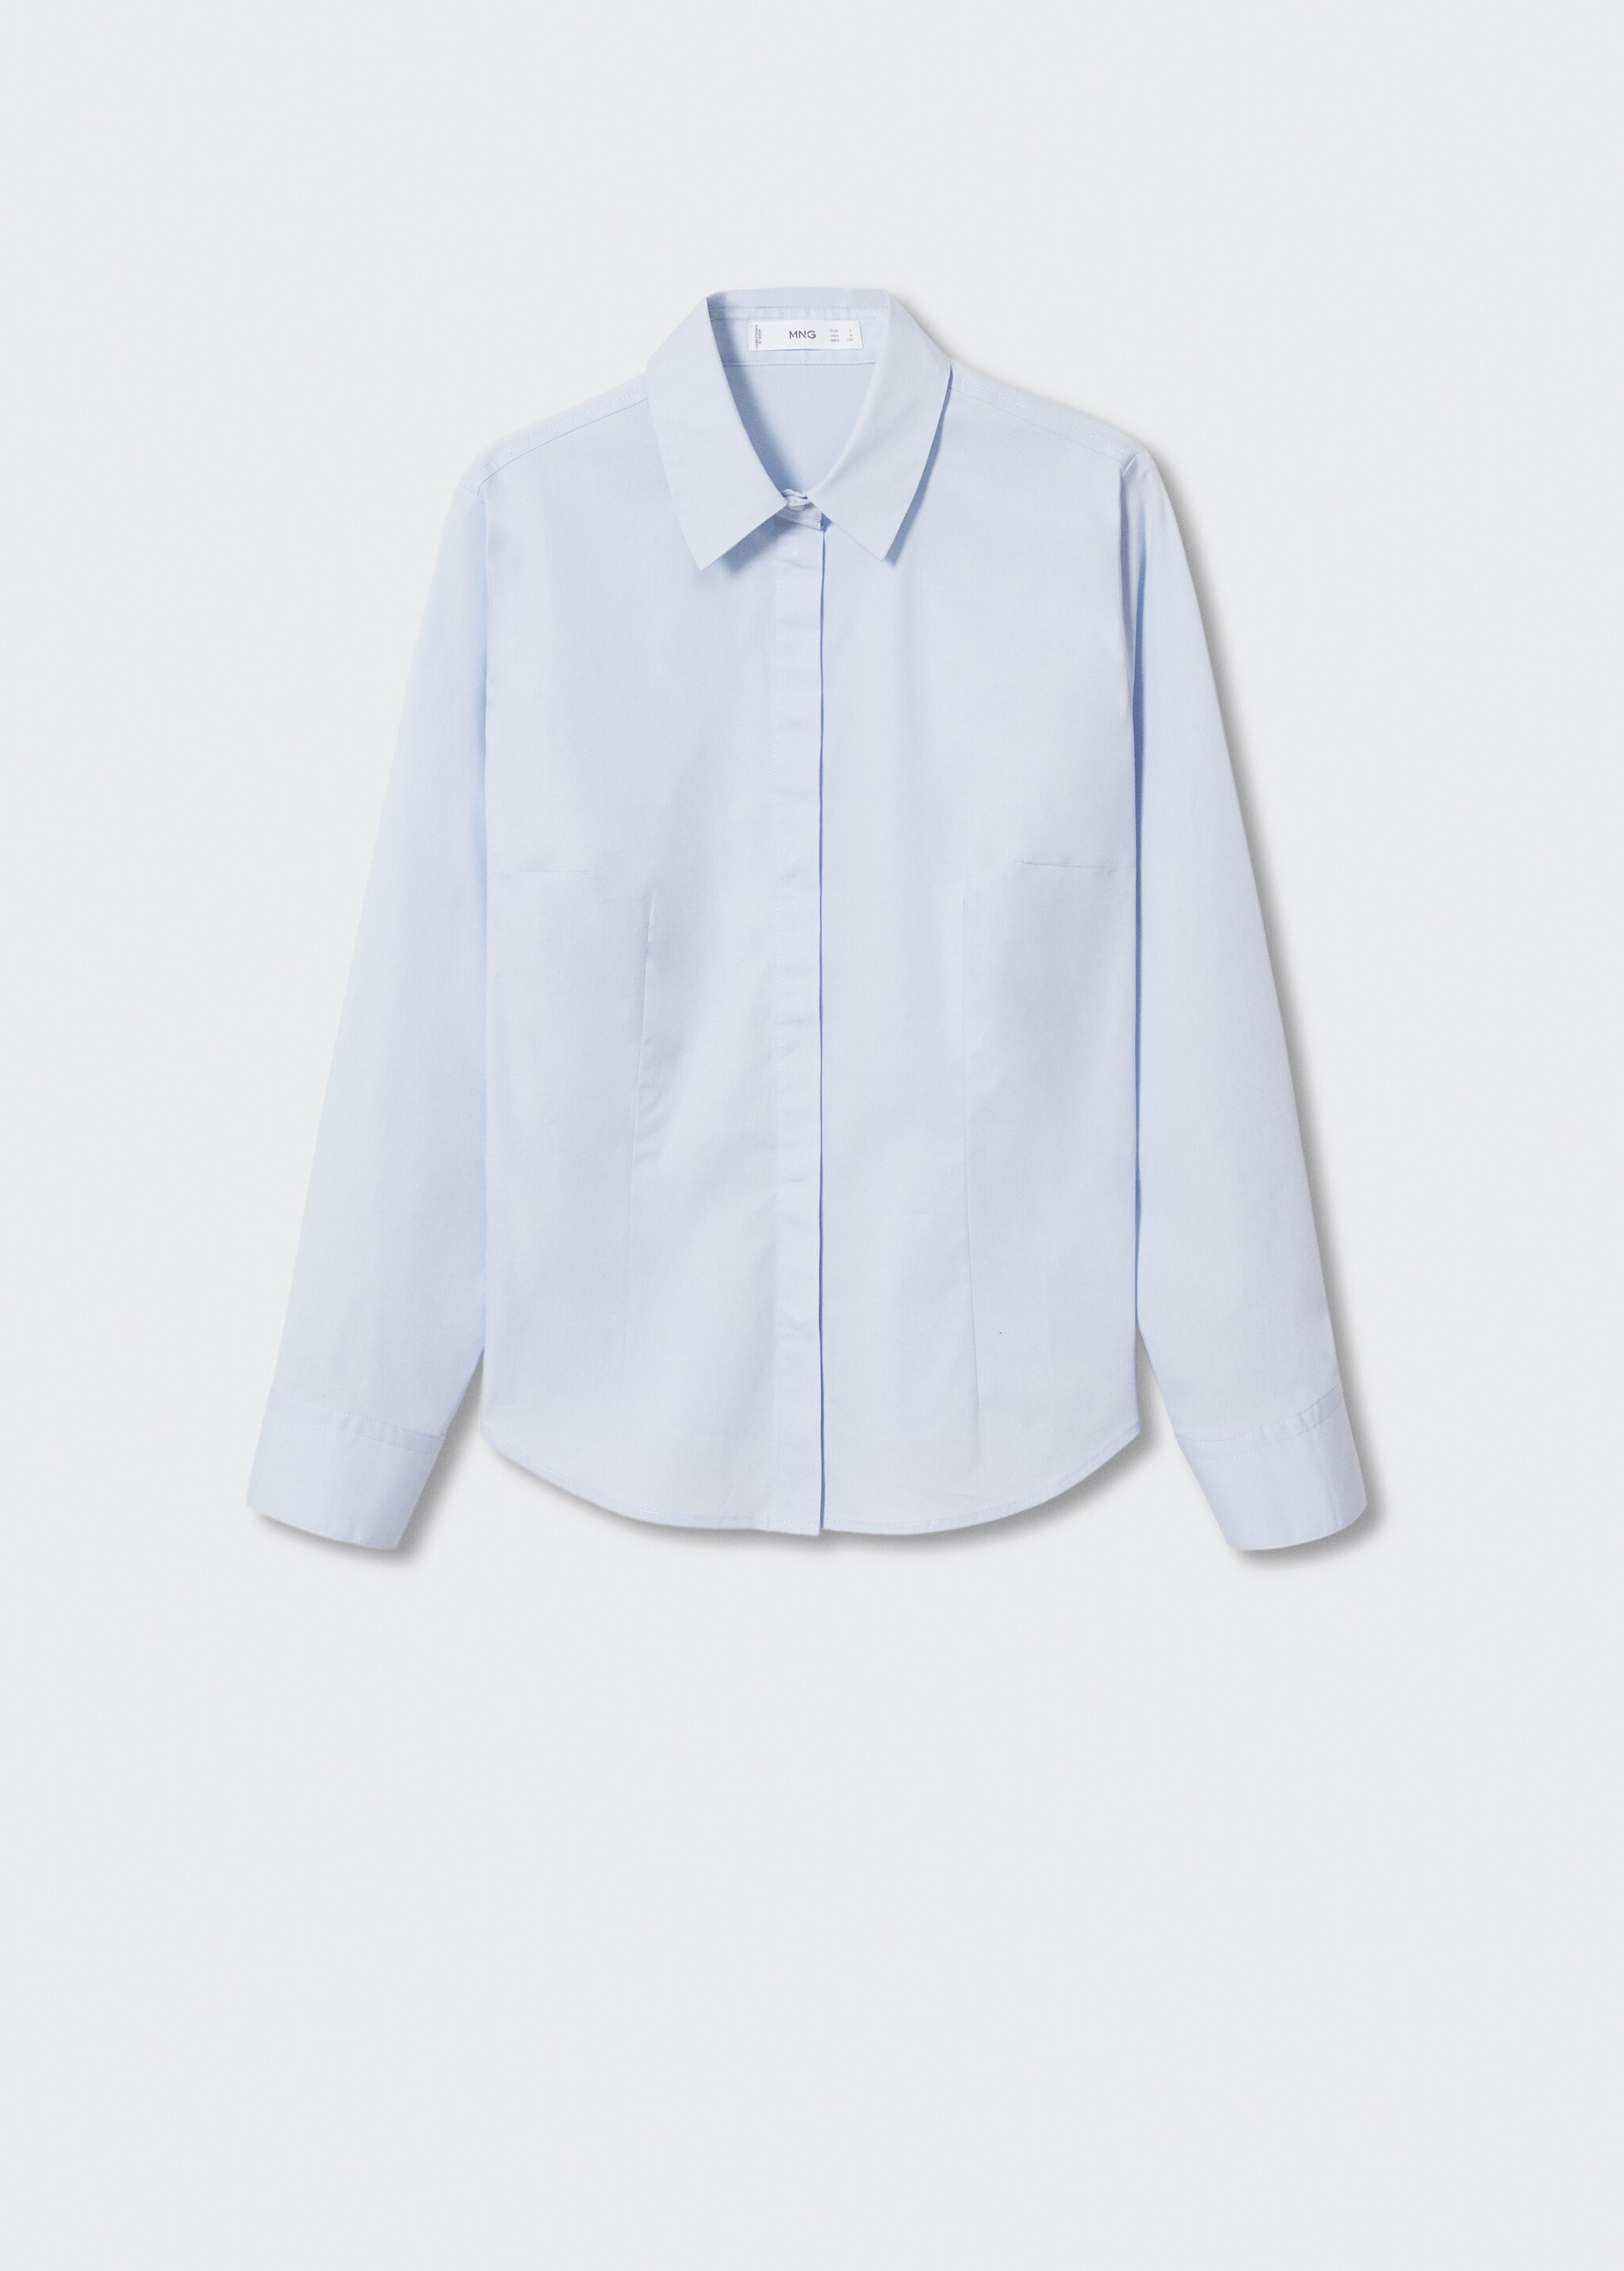 Camisa básica algodón - Artículo sin modelo